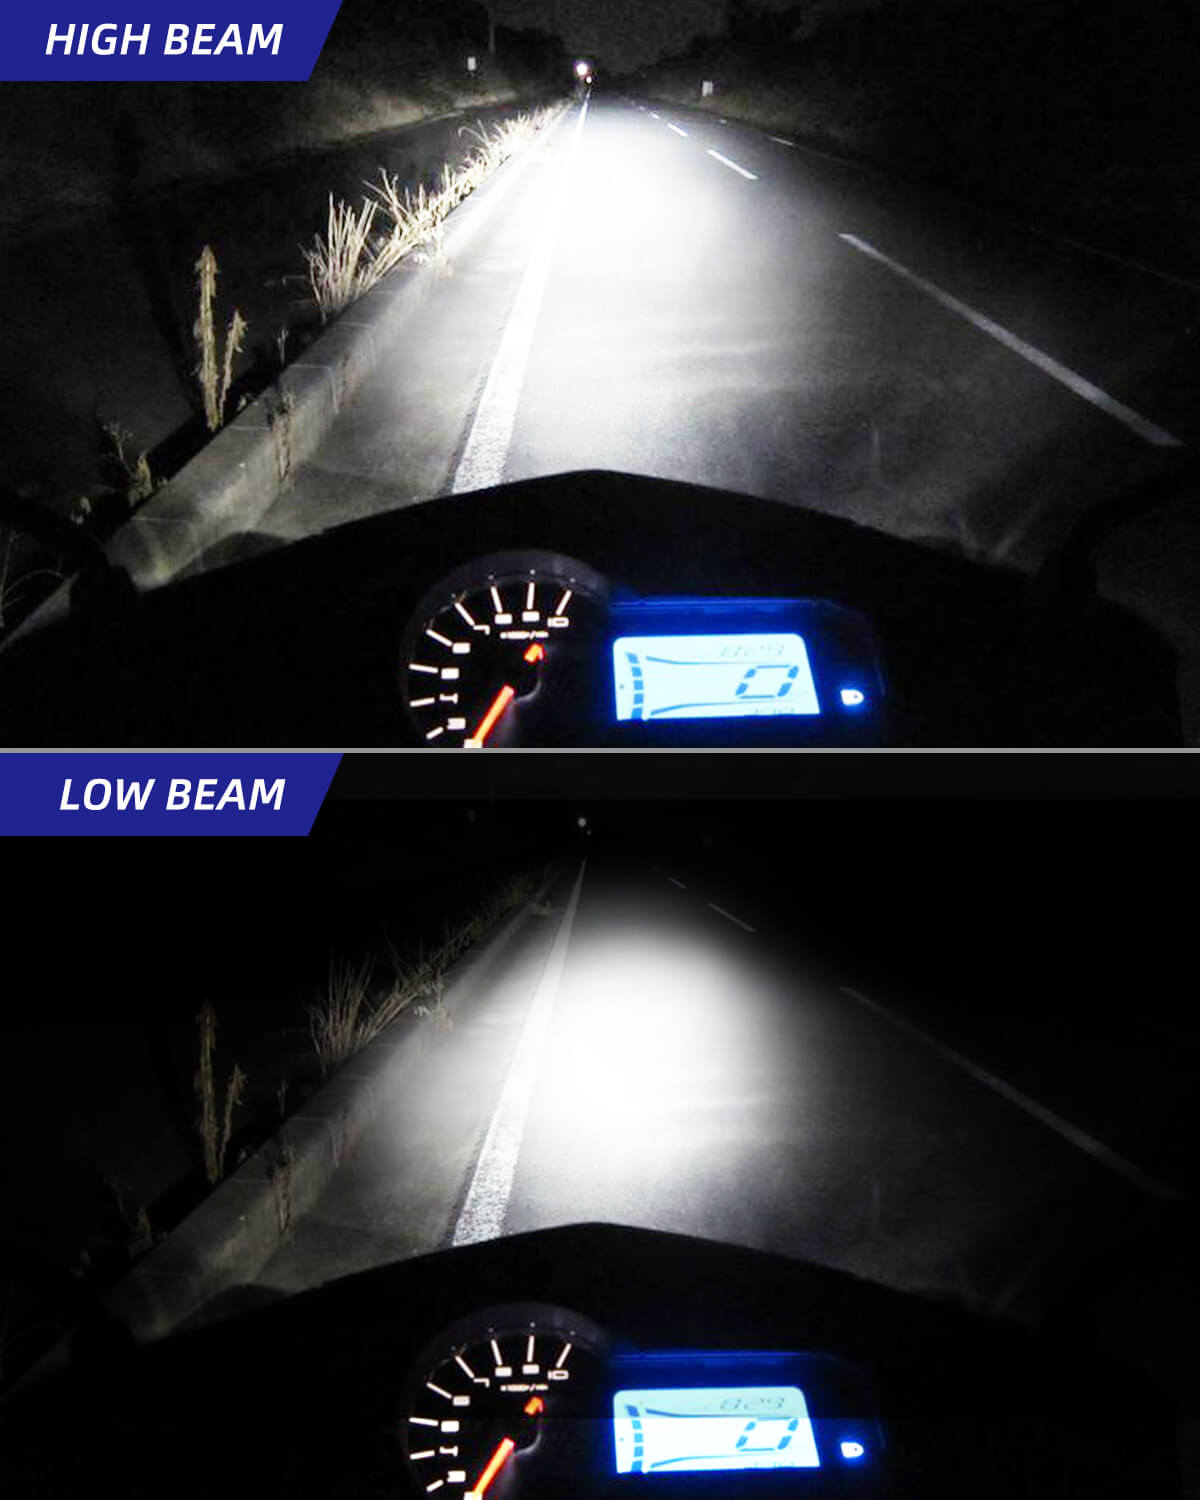 H4 LED Headlight Bulb Motorcycle, 9003 HB2 LED Light 6000K White for H —  AUXITO